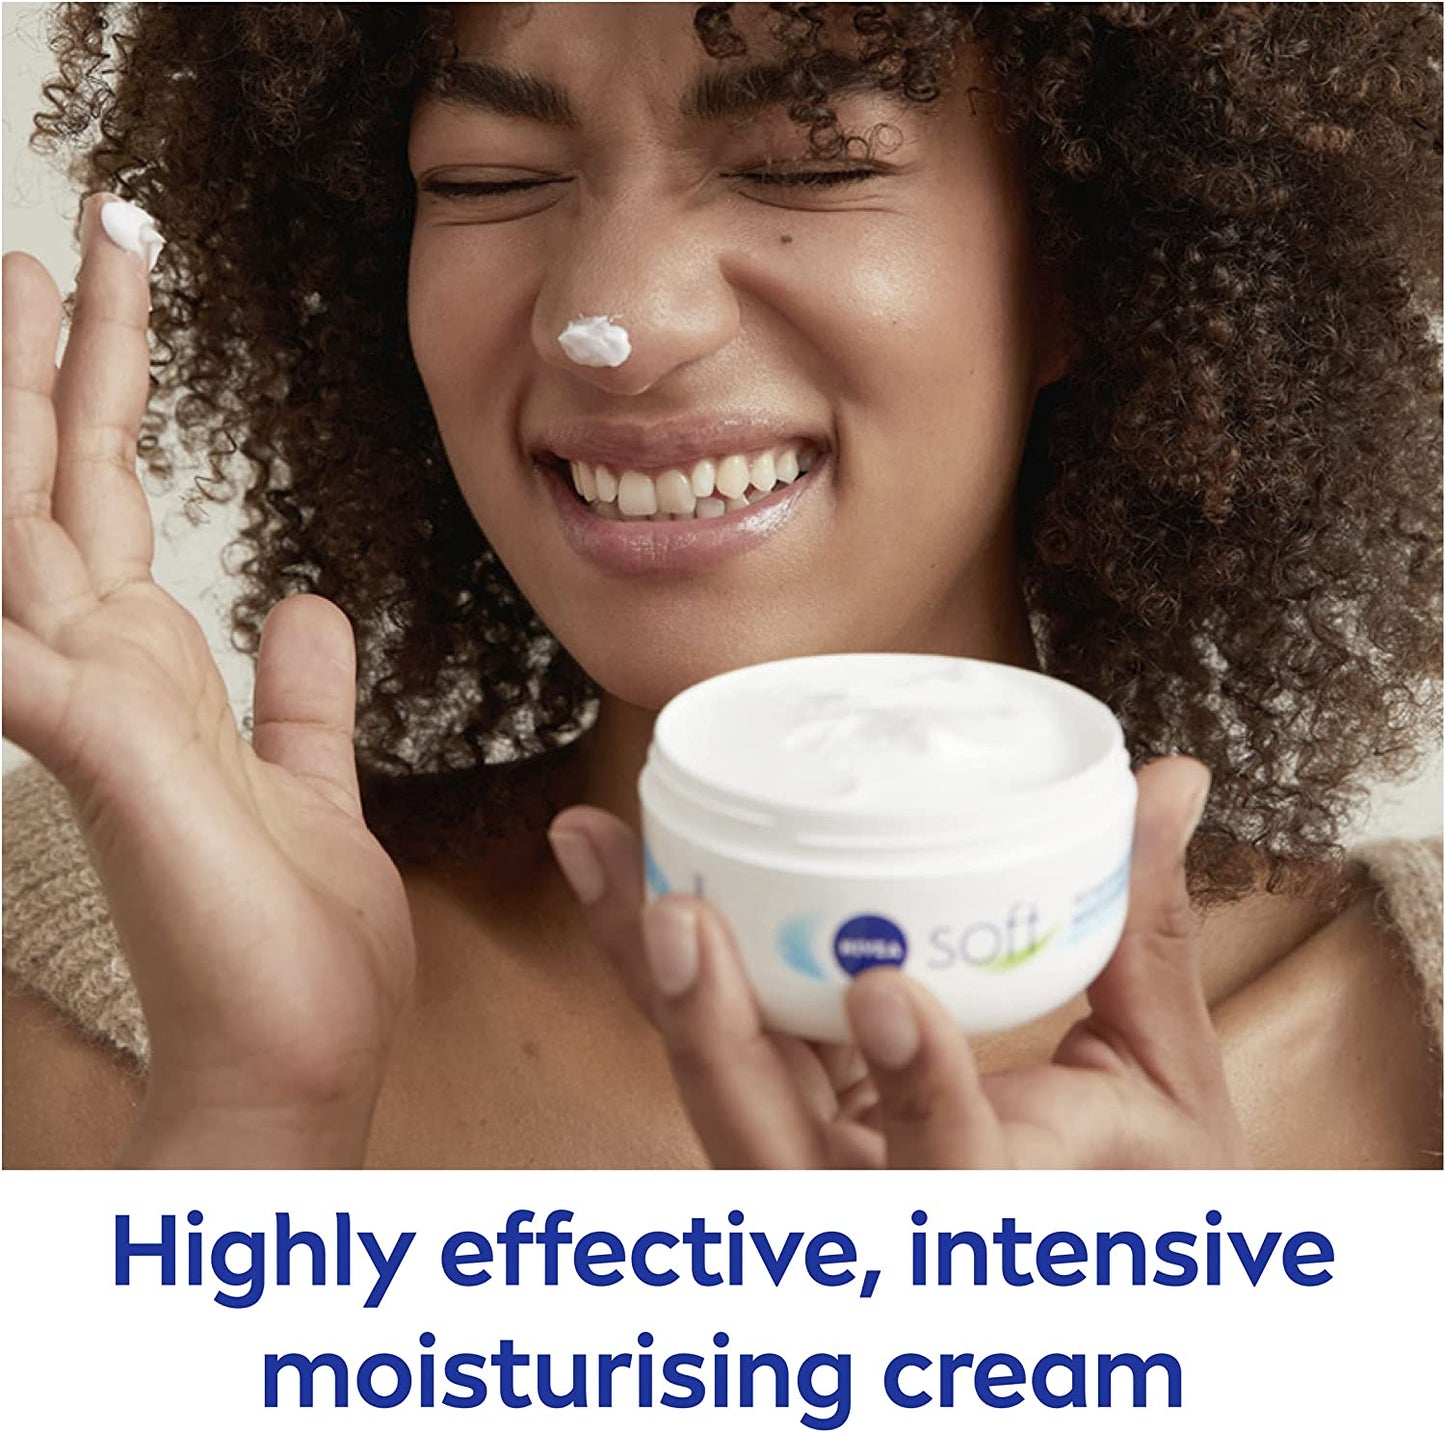 NIVEA Soft Moisturising Cream (200ml)